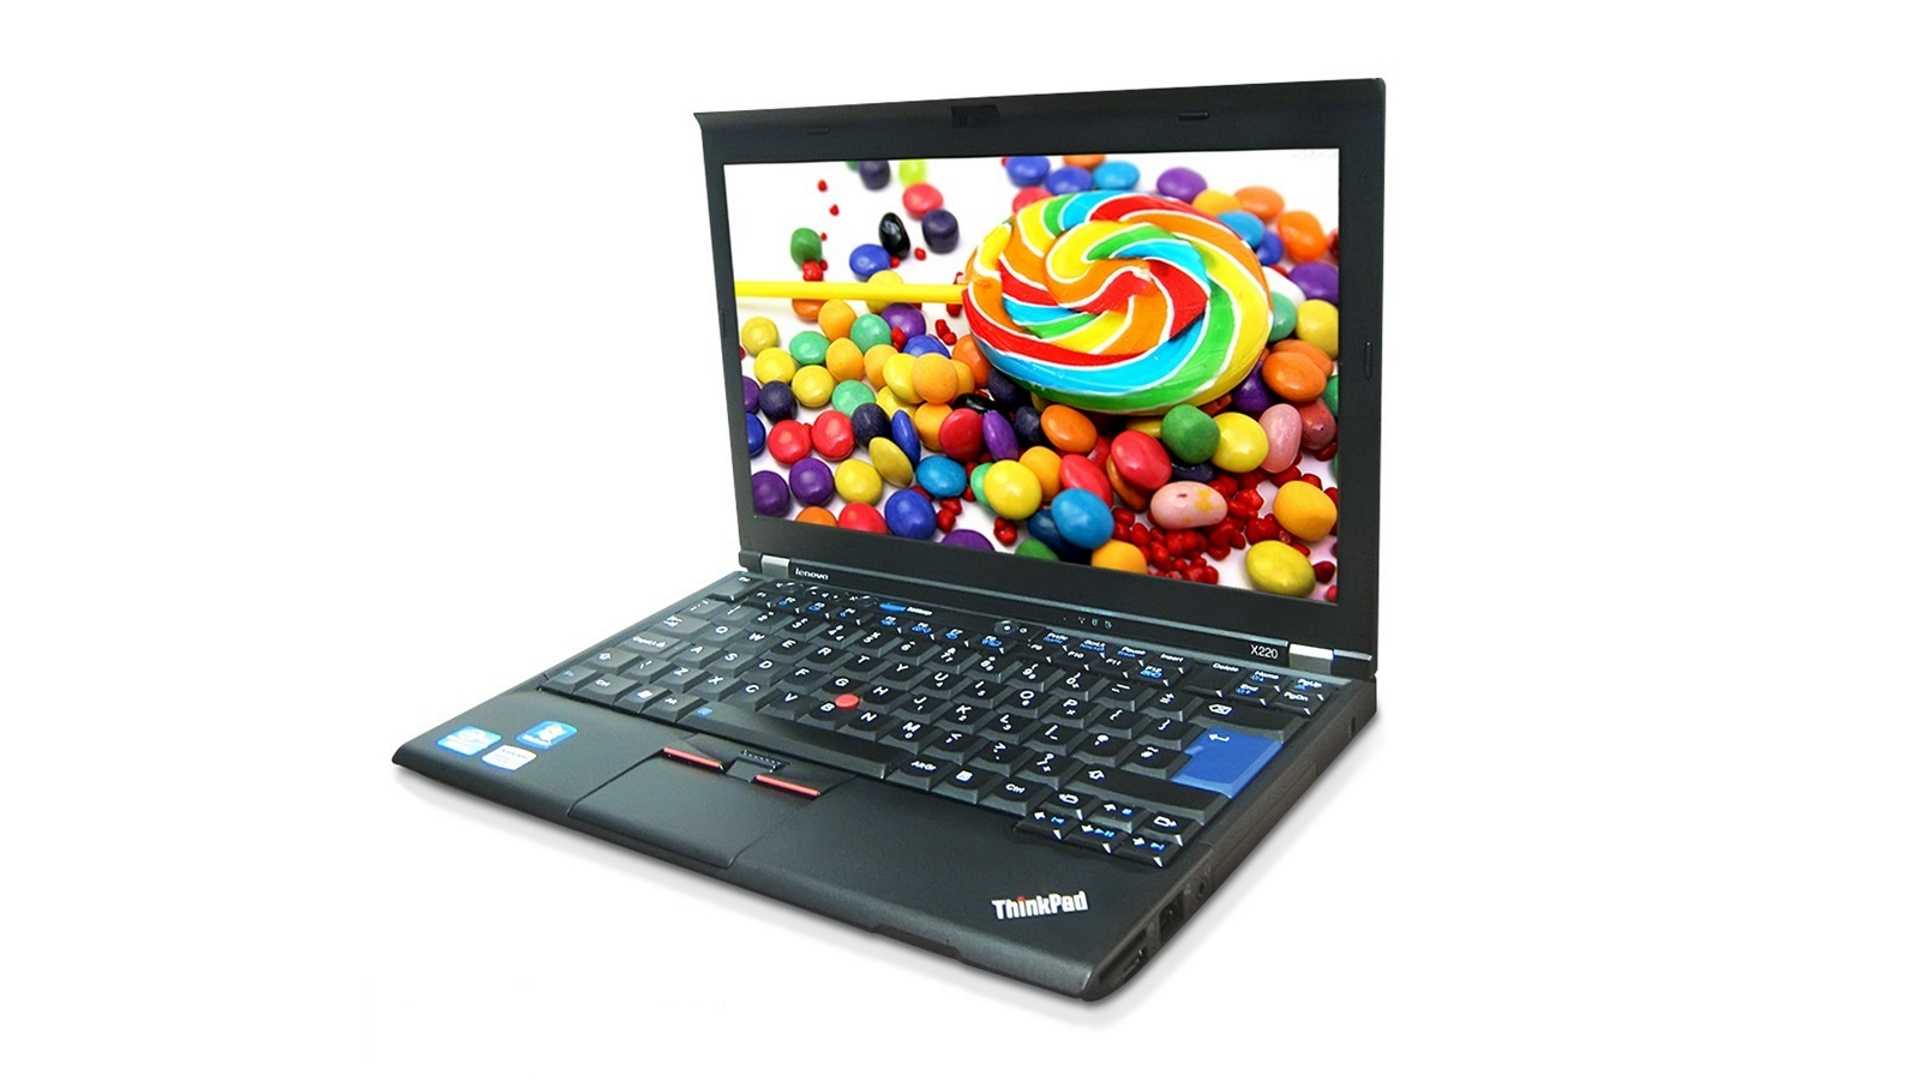 Купить ноутбук lenovo thinkpad edge s430 в минске с доставкой из интернет-магазина